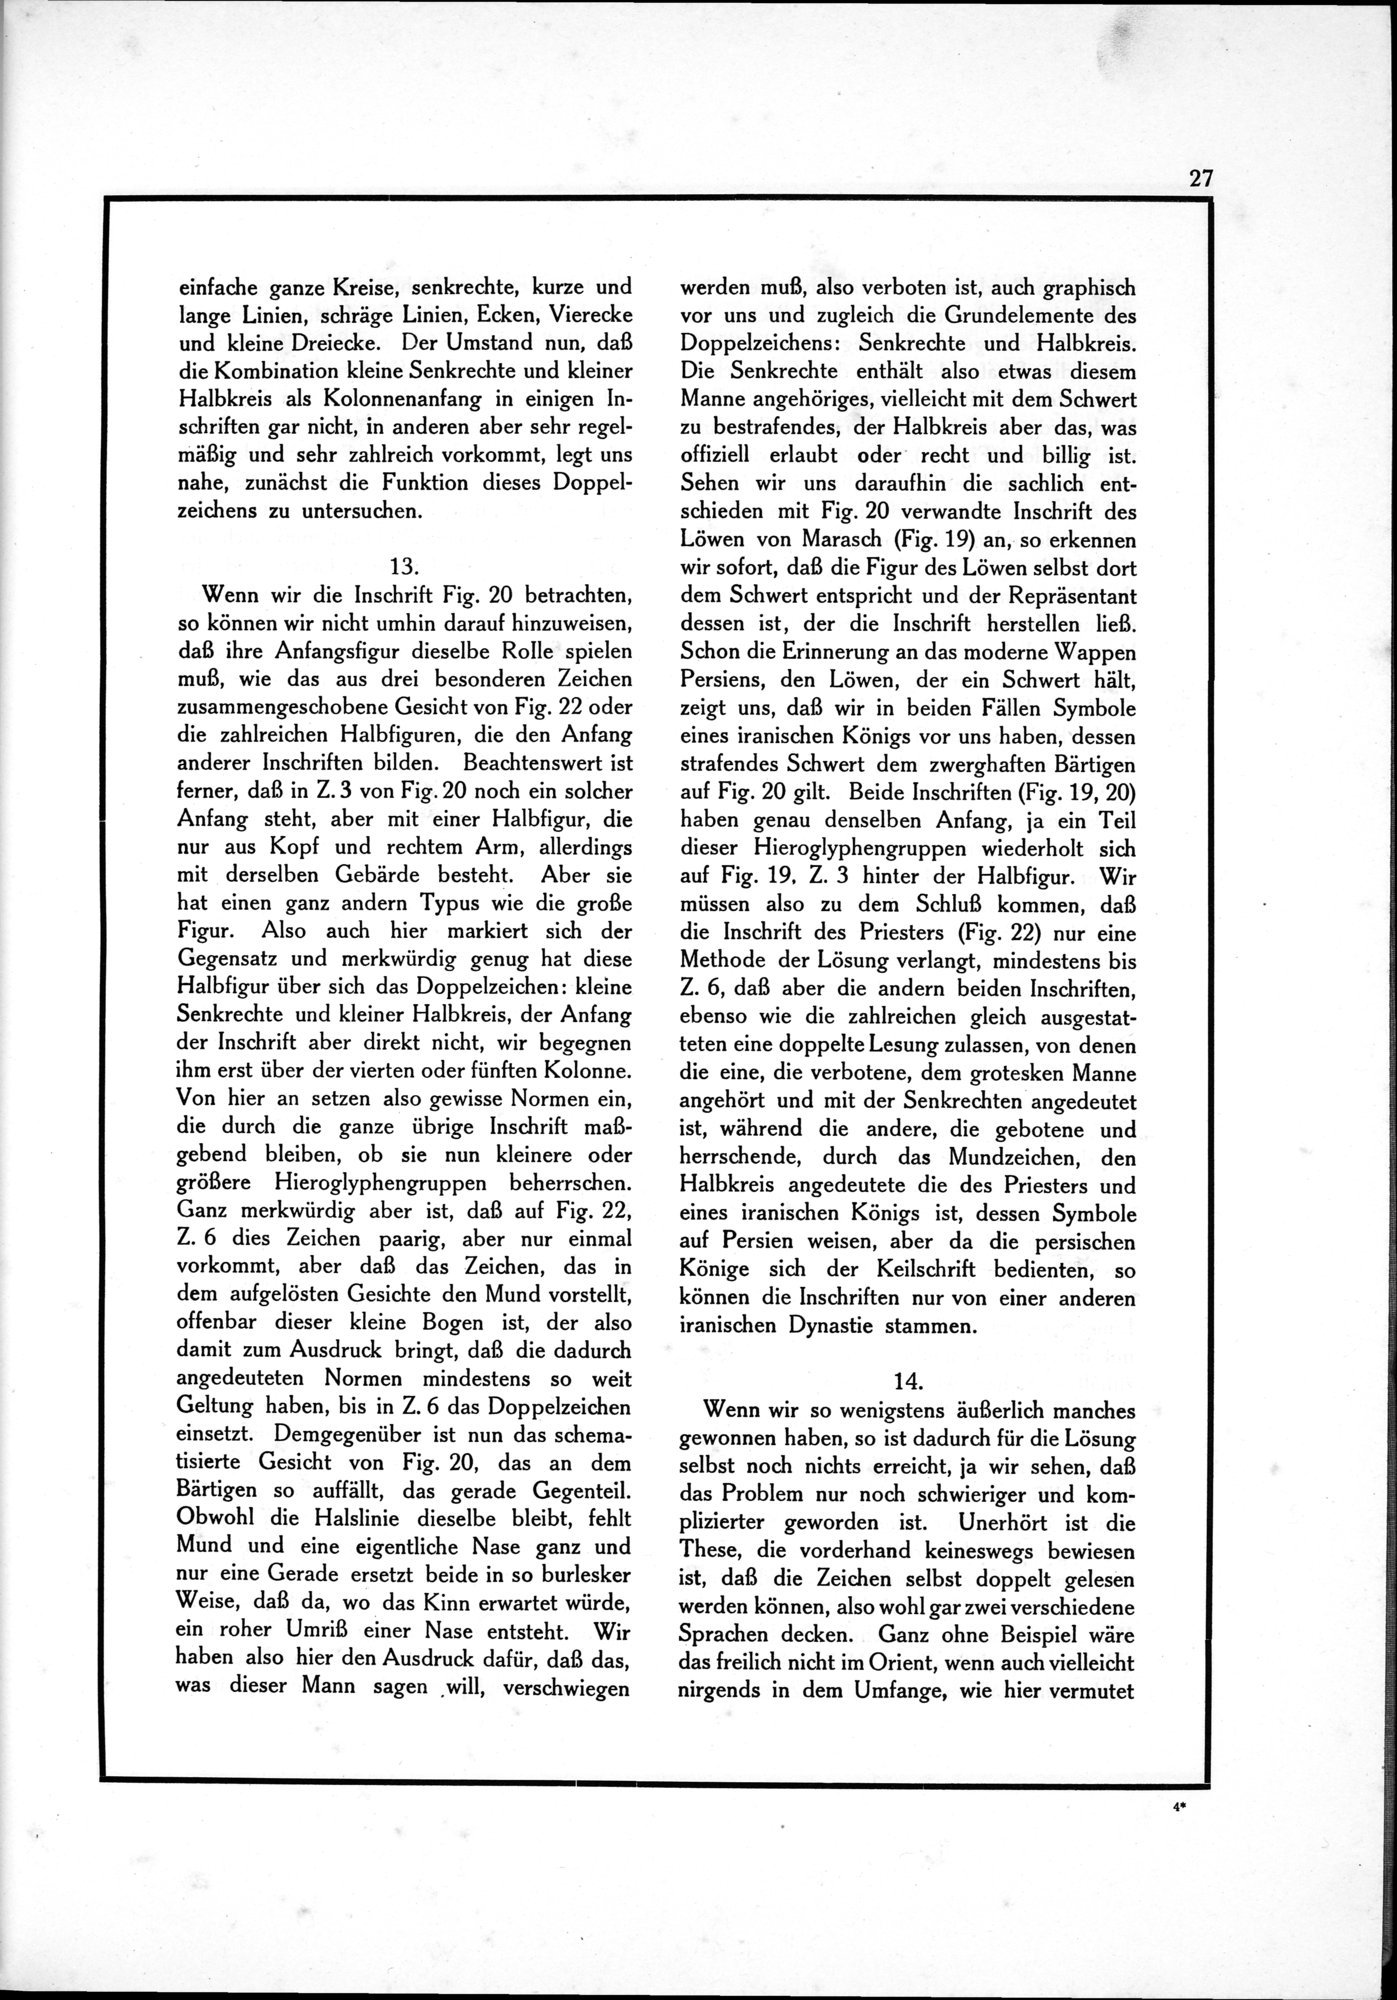 Die Teufel des Avesta und Ihre Beziehungen zur Ikonographie des Buddhismus Zentral-Asiens : vol.1 / Page 31 (Grayscale High Resolution Image)